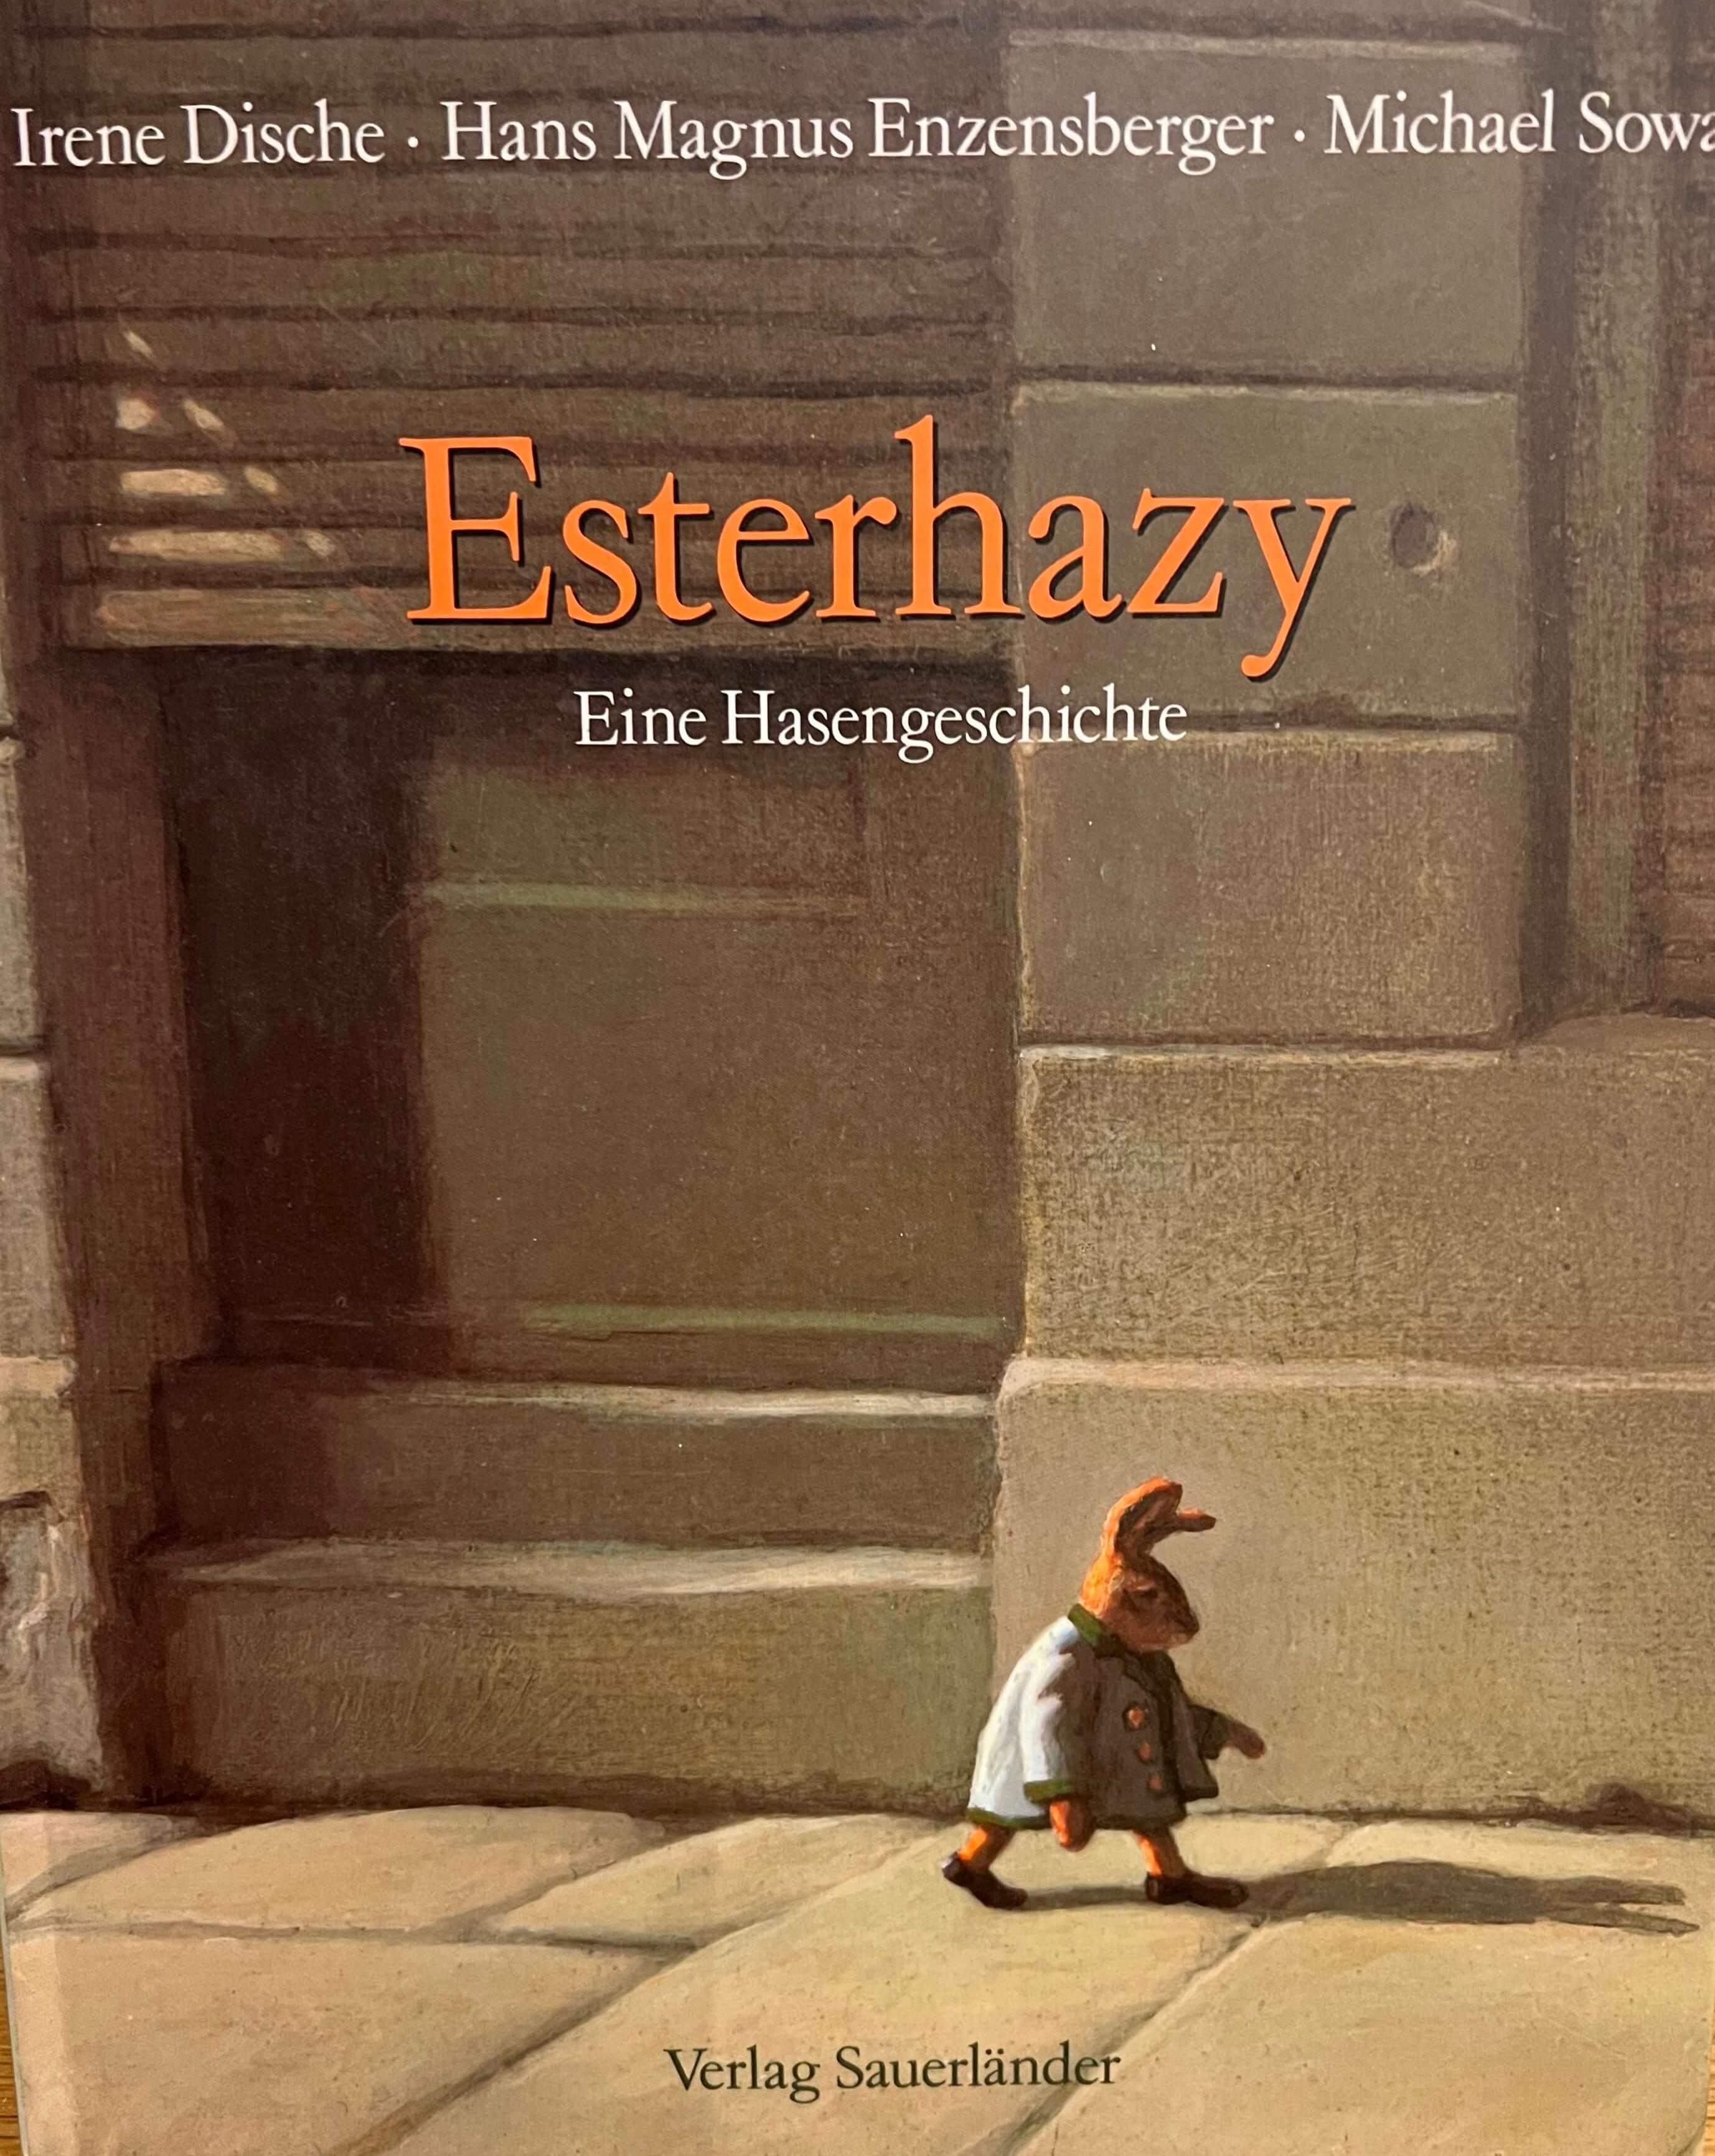 Esterhazy - Eine Hasengeschichte